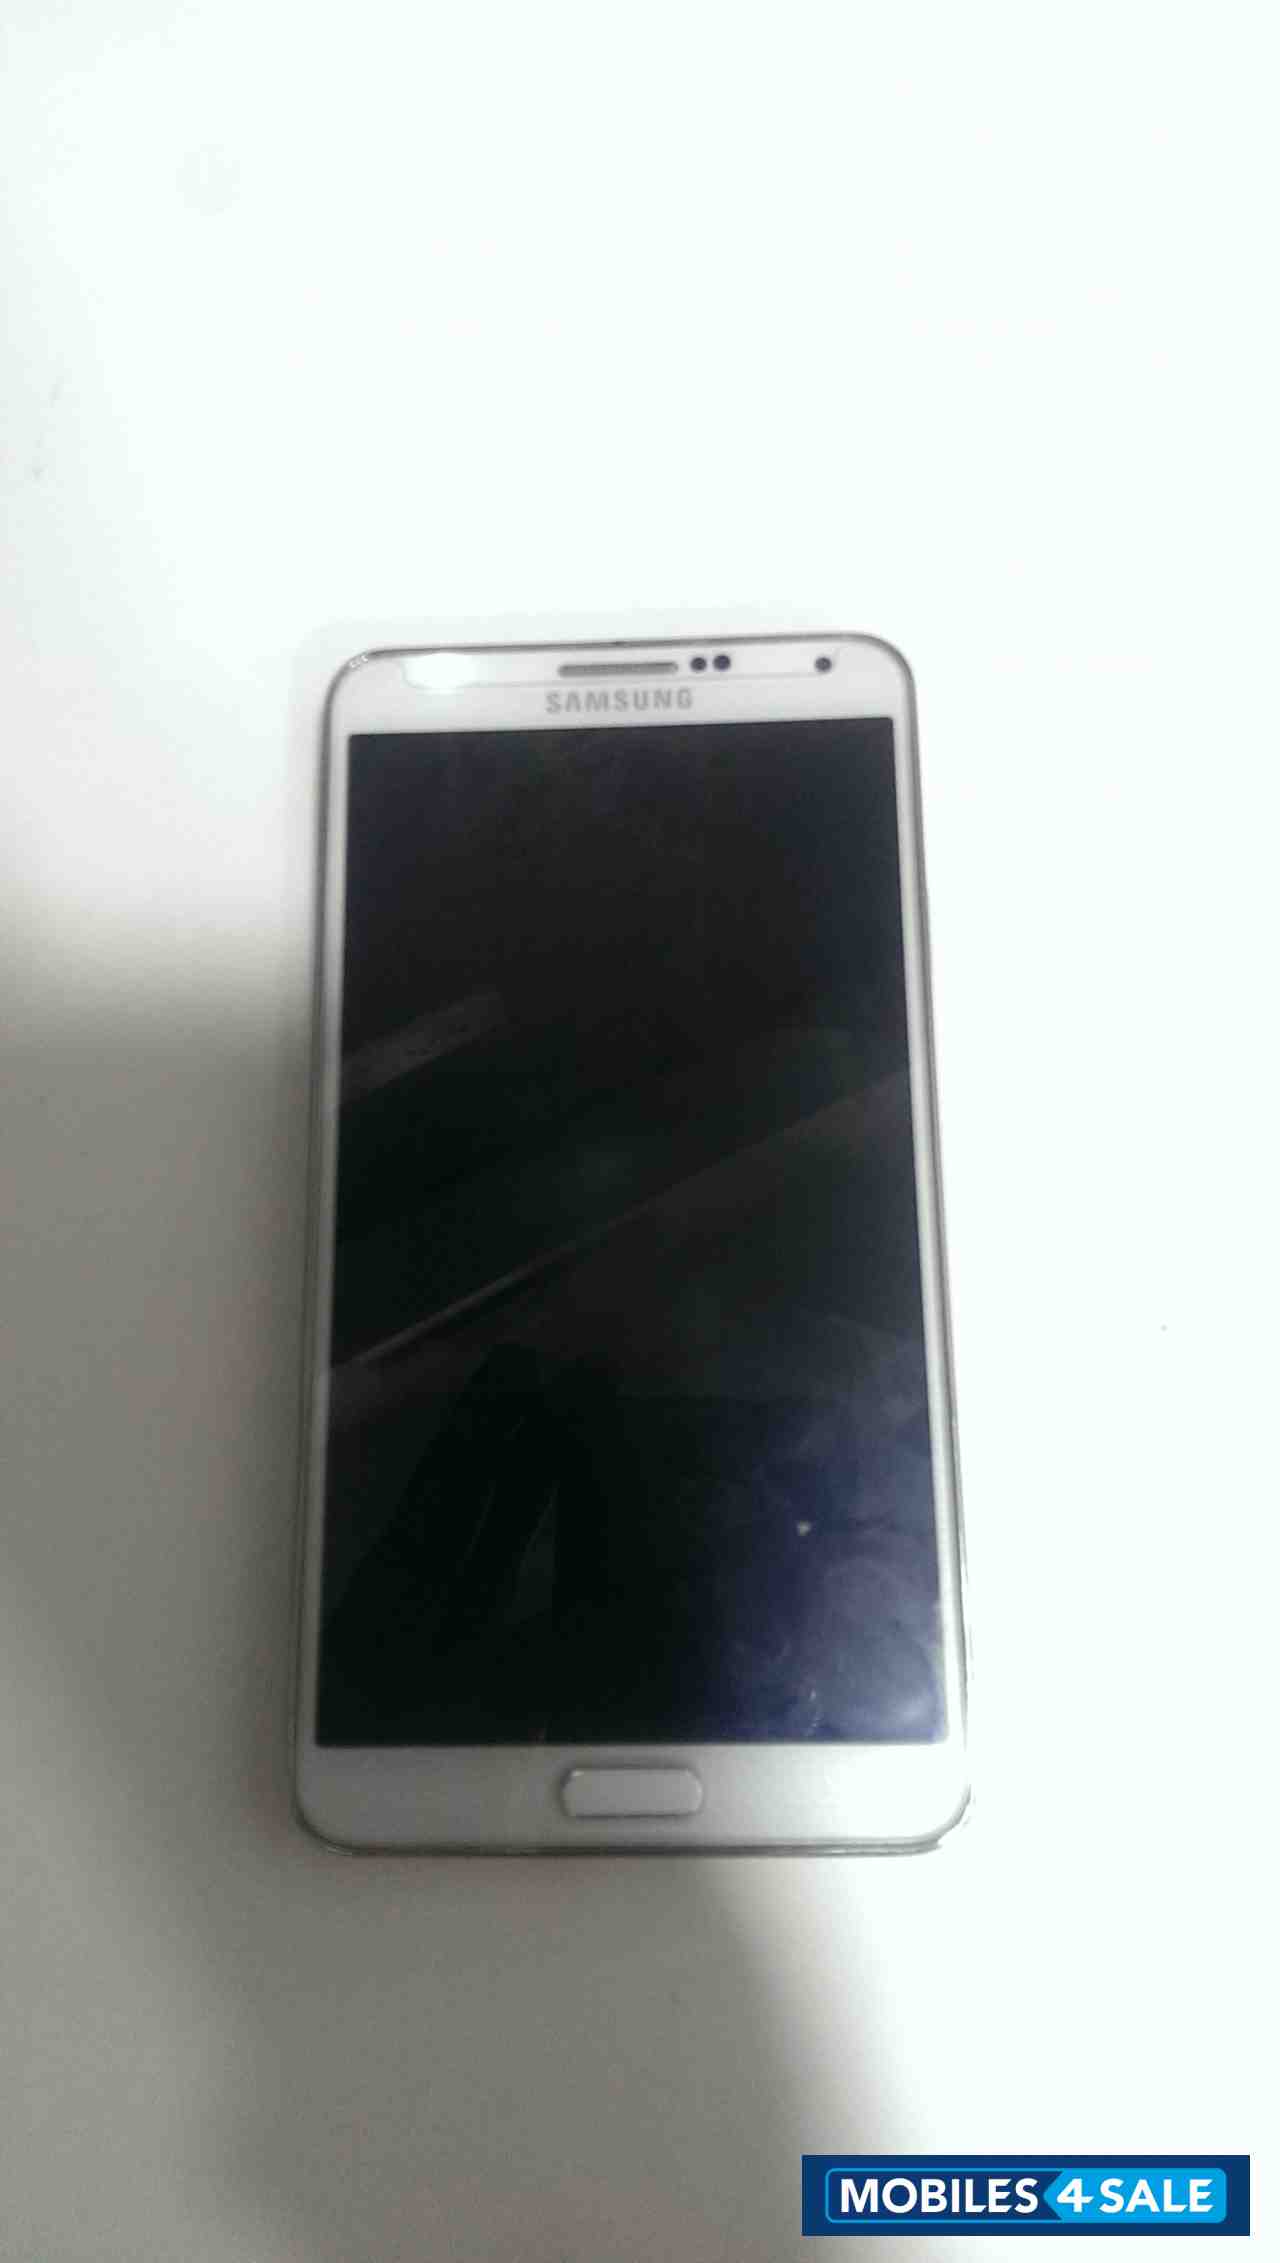 White Samsung Galaxy Note 3